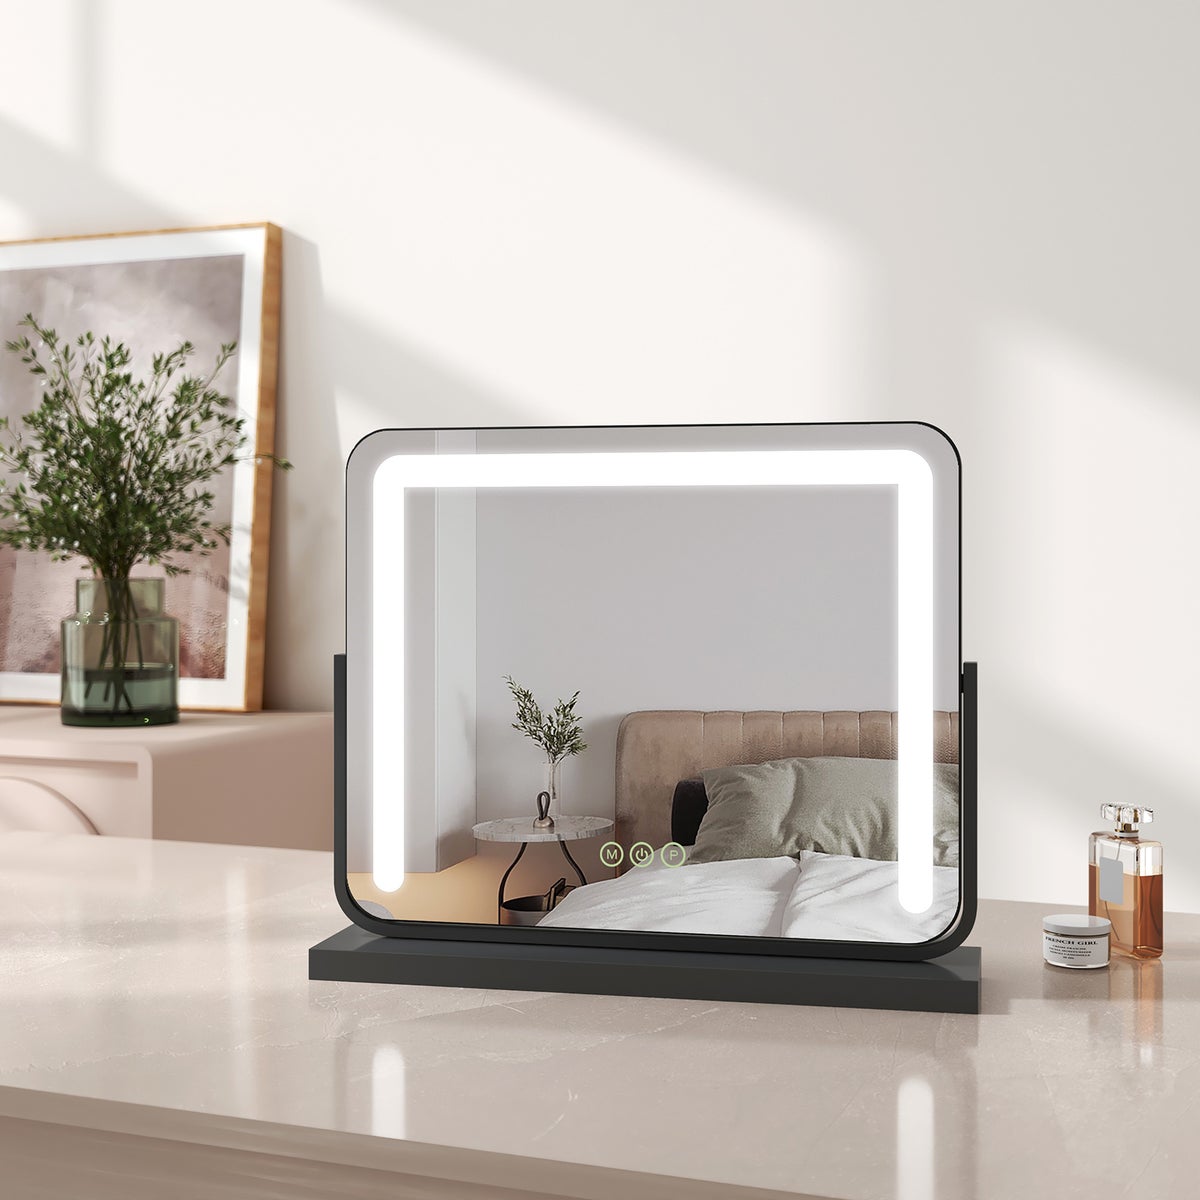 EMKE Schminkspiegel mit Beleuchtung LED Kosmetikspiegel Drehbar Make Up Spiegel mit Touchschalter, 3 Lichtfarben Dimmbar und Memory-Funktion, Schwarz, 50x41,6cm